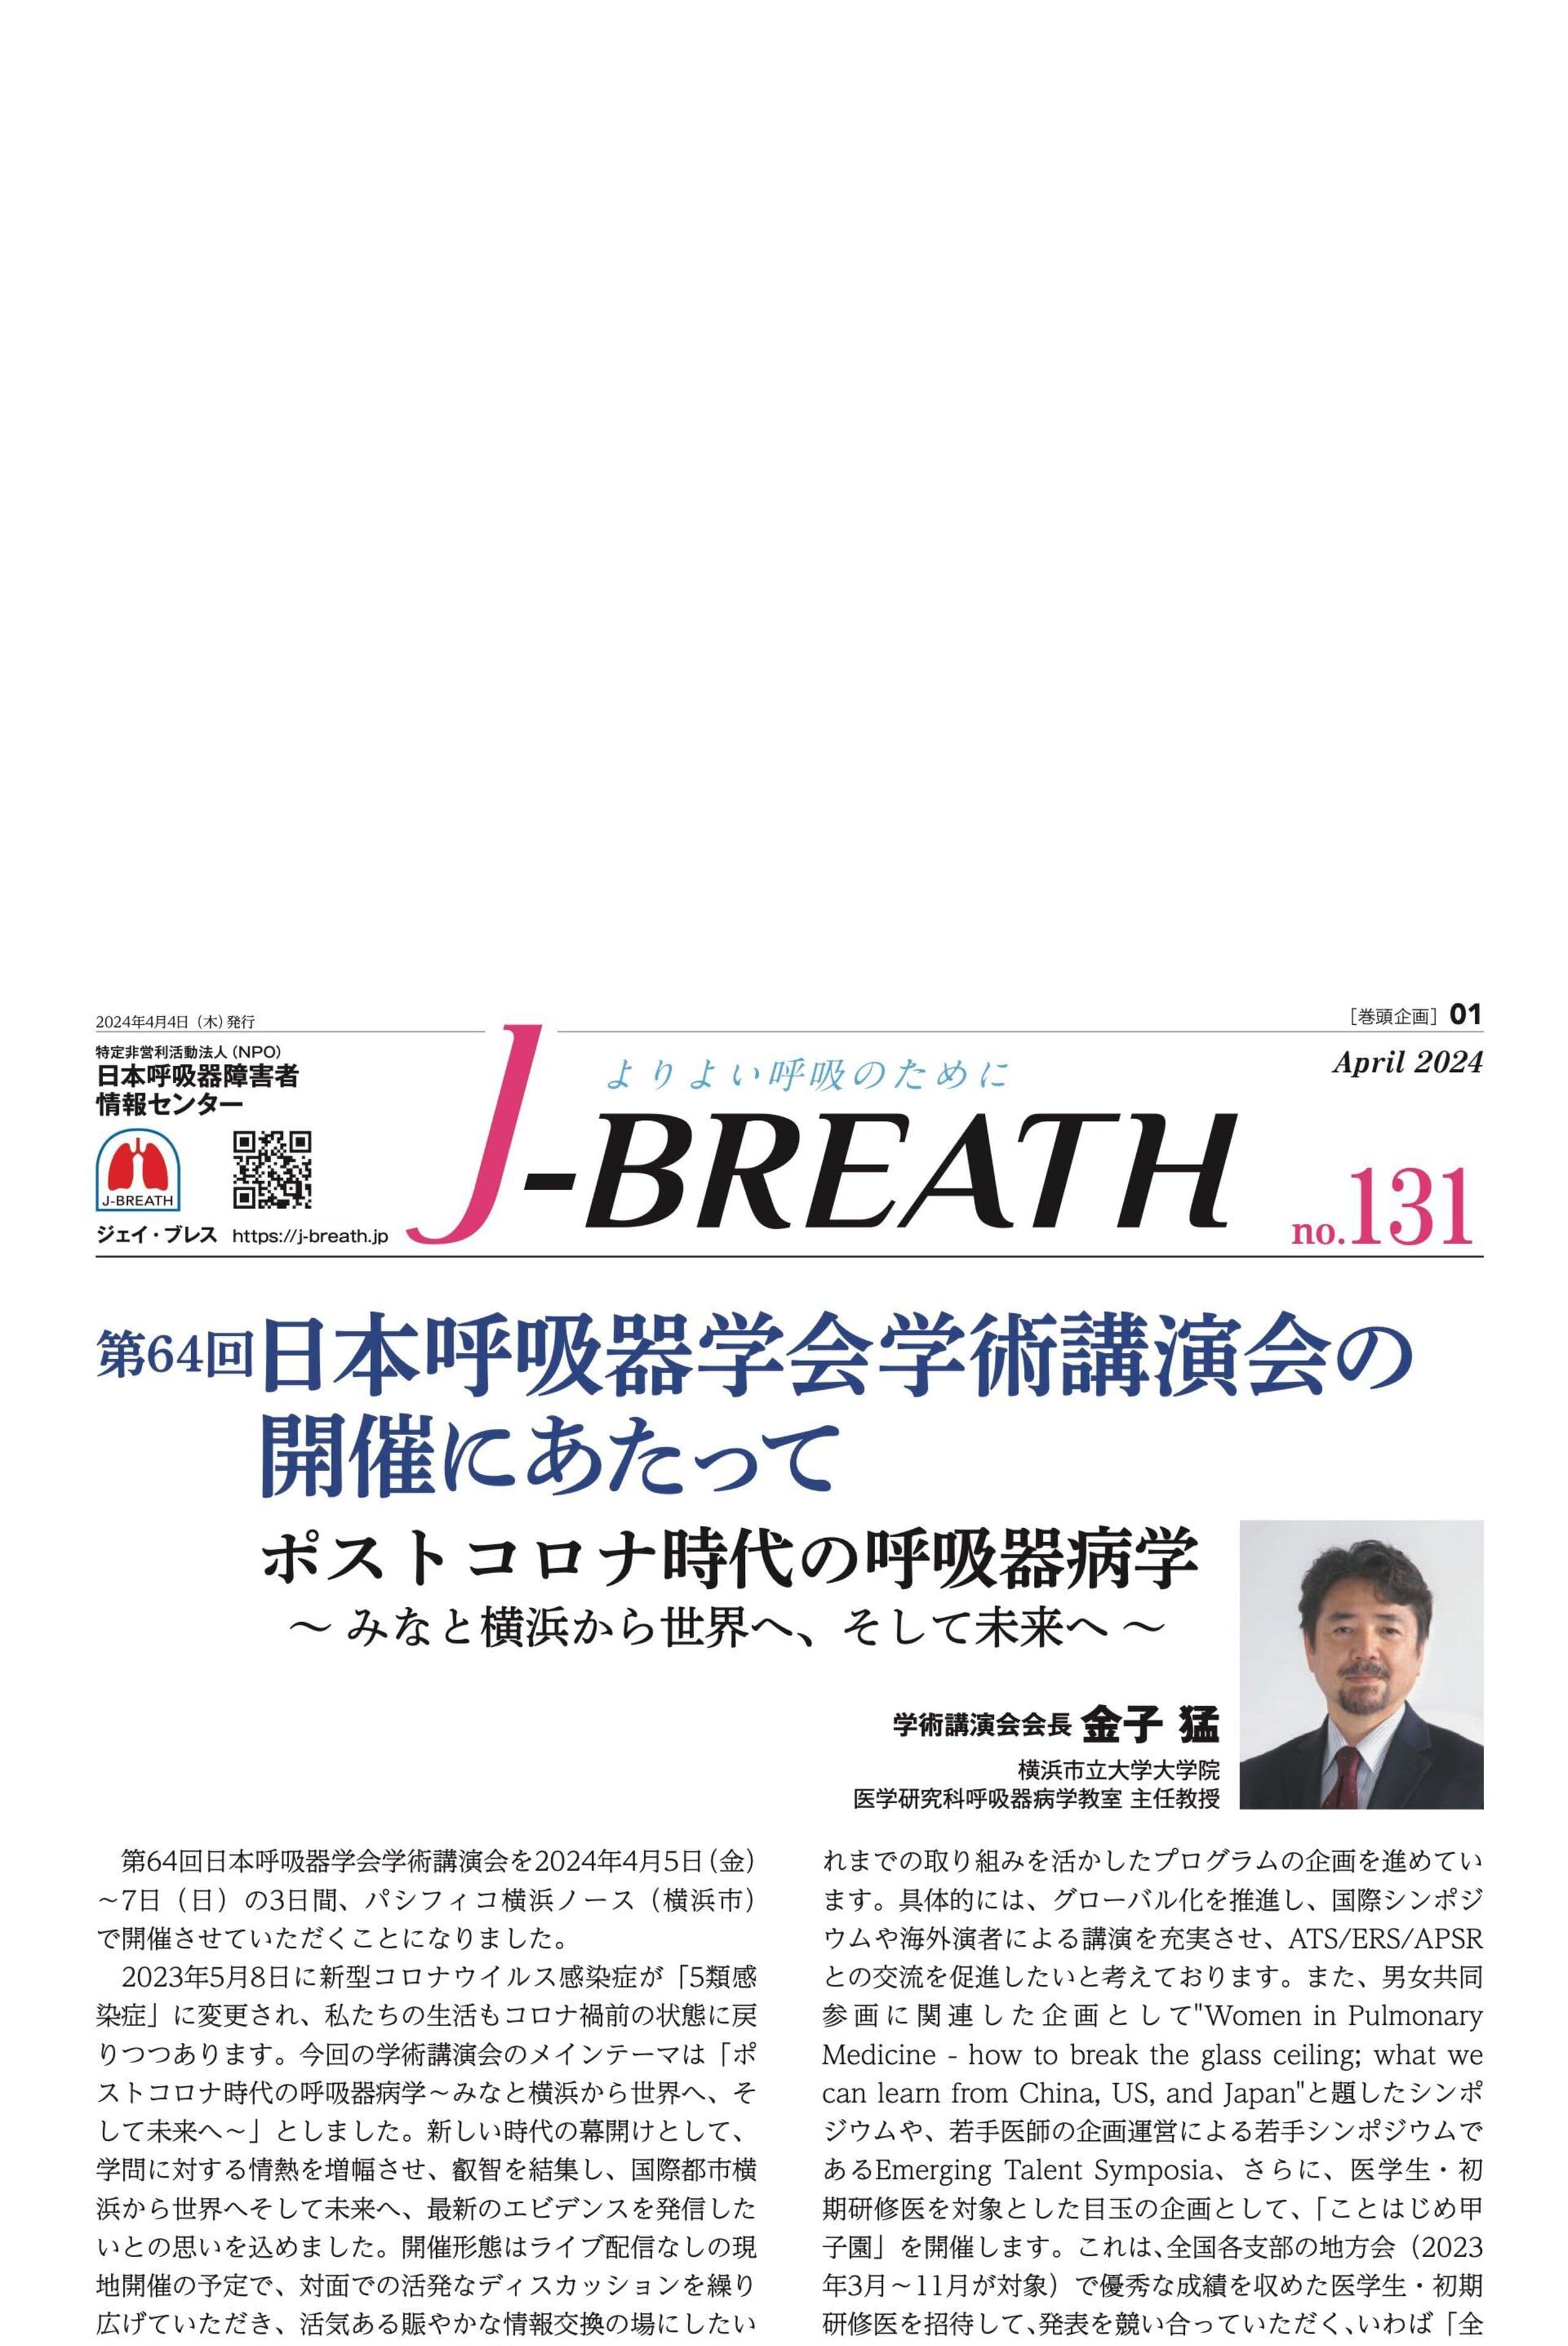 会報紙「J-BREATH 」